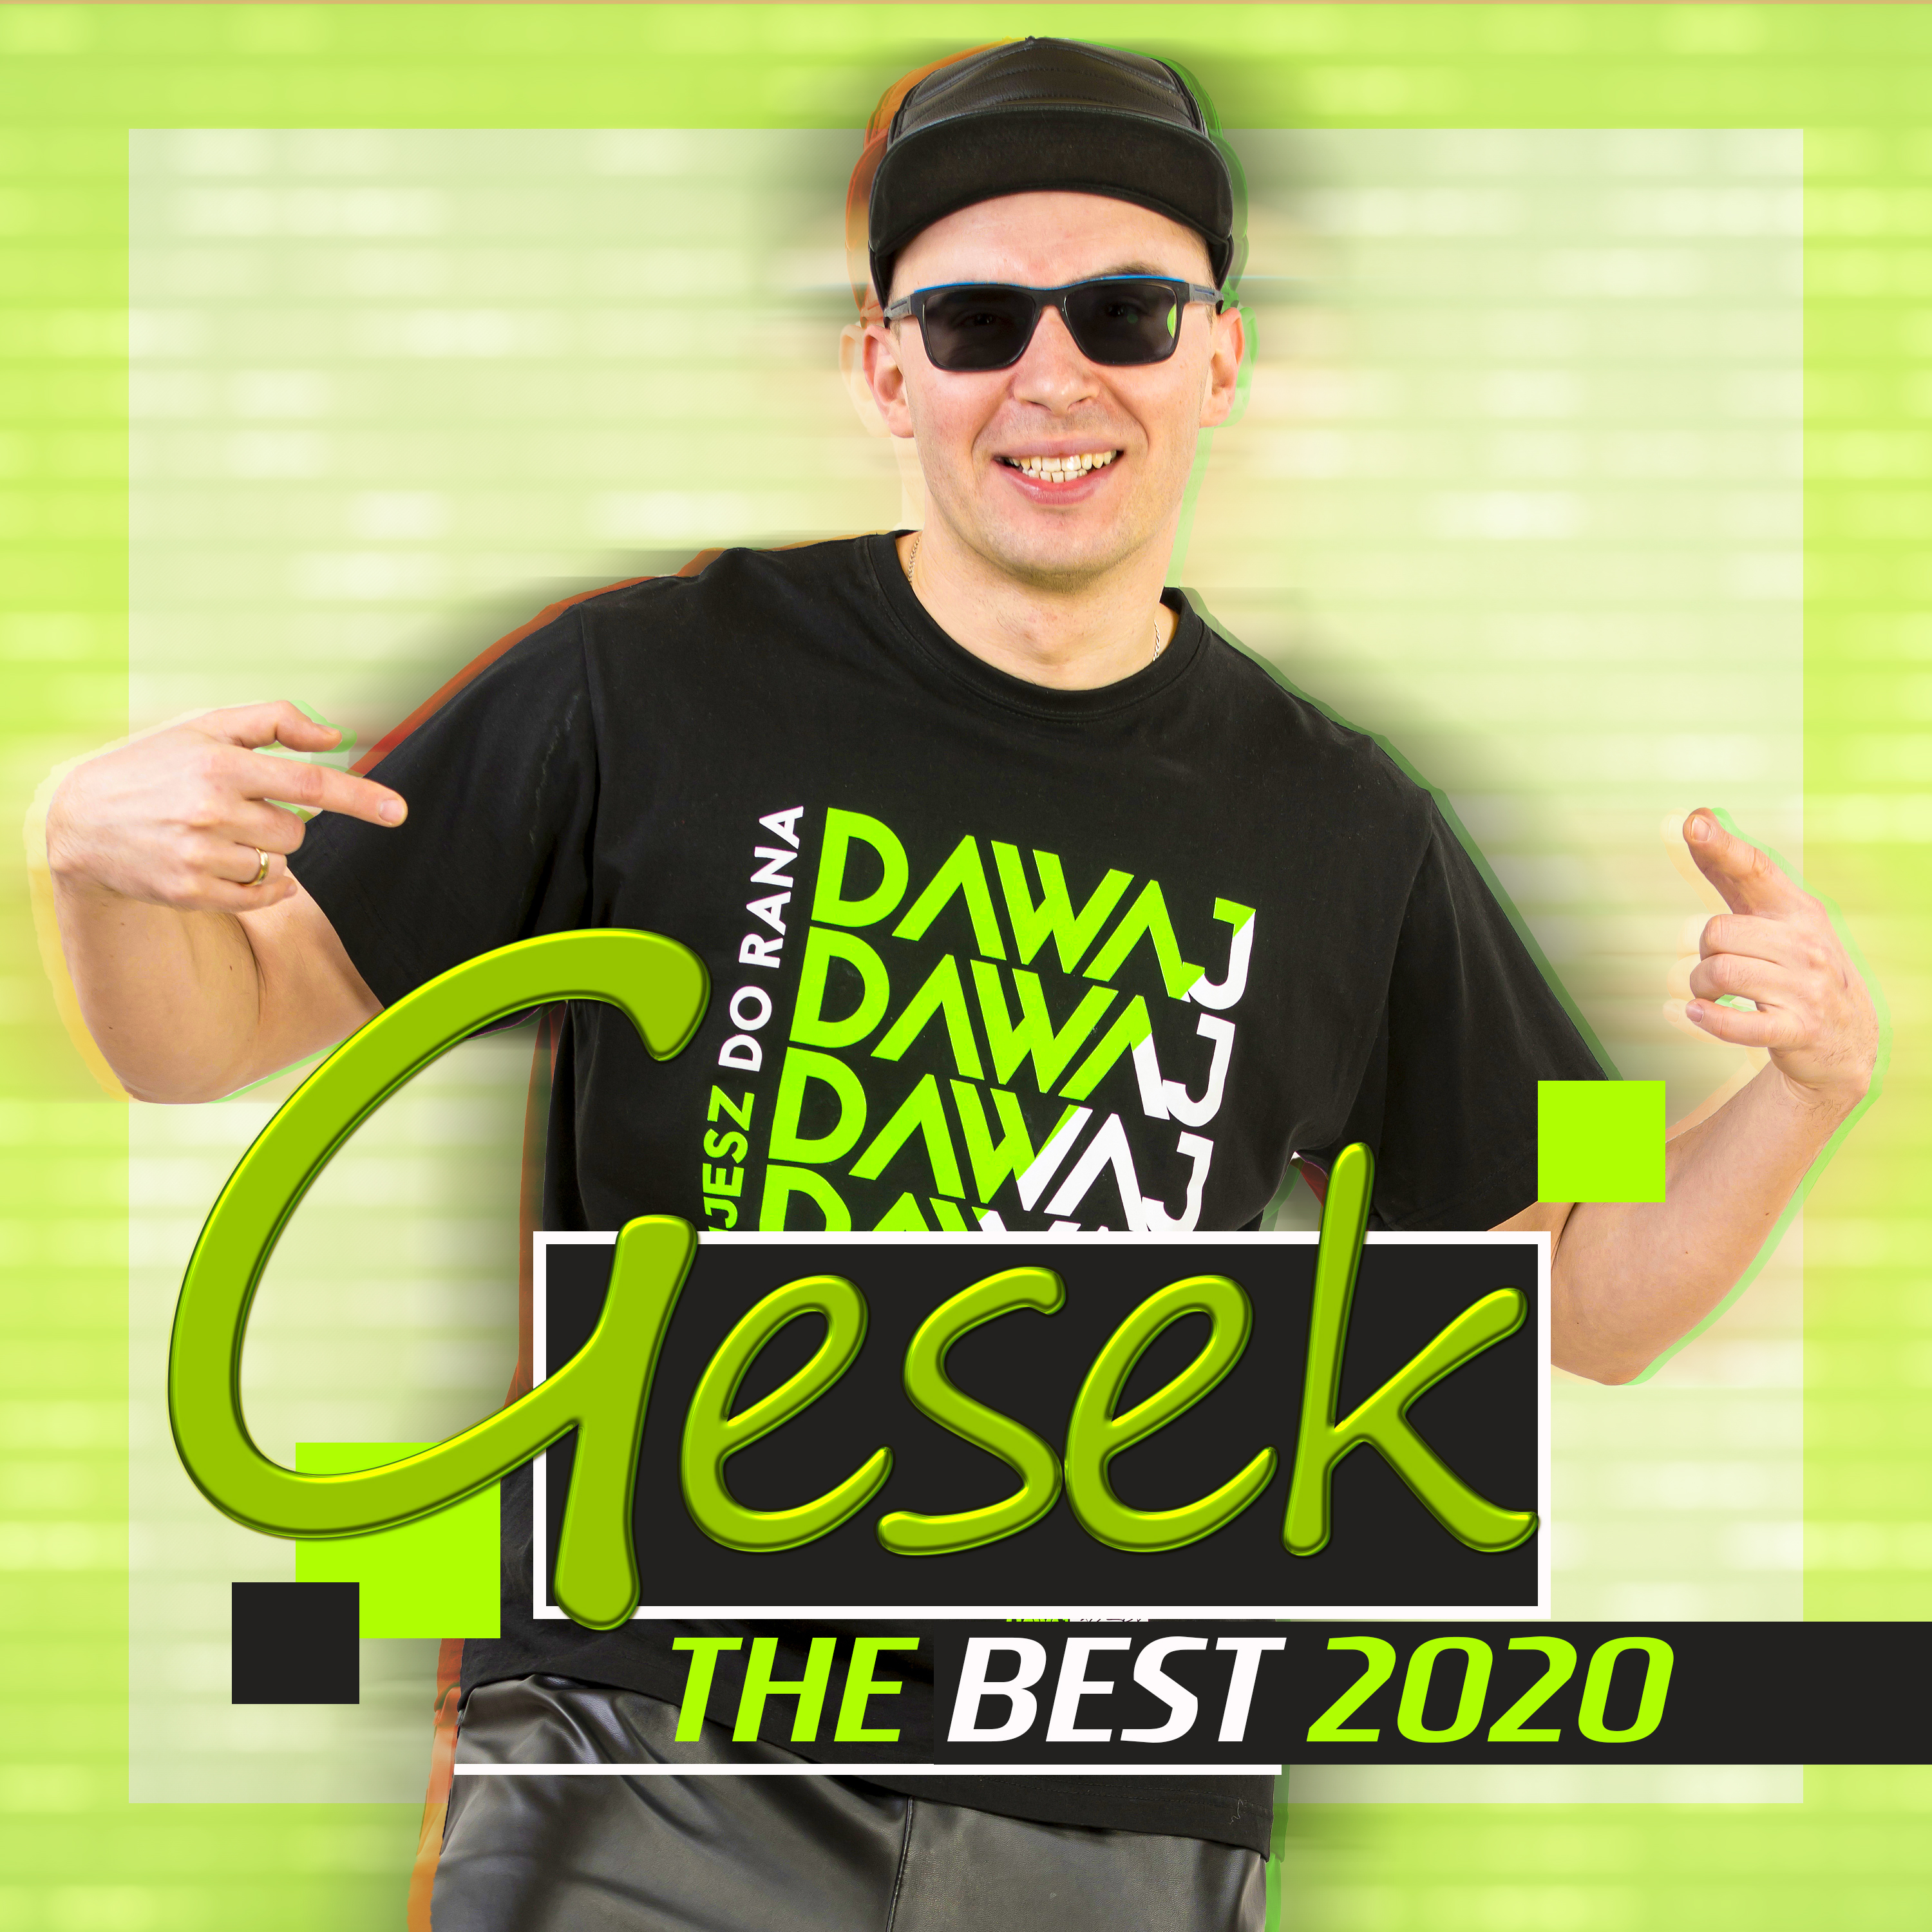 Gesek - The Best 2020